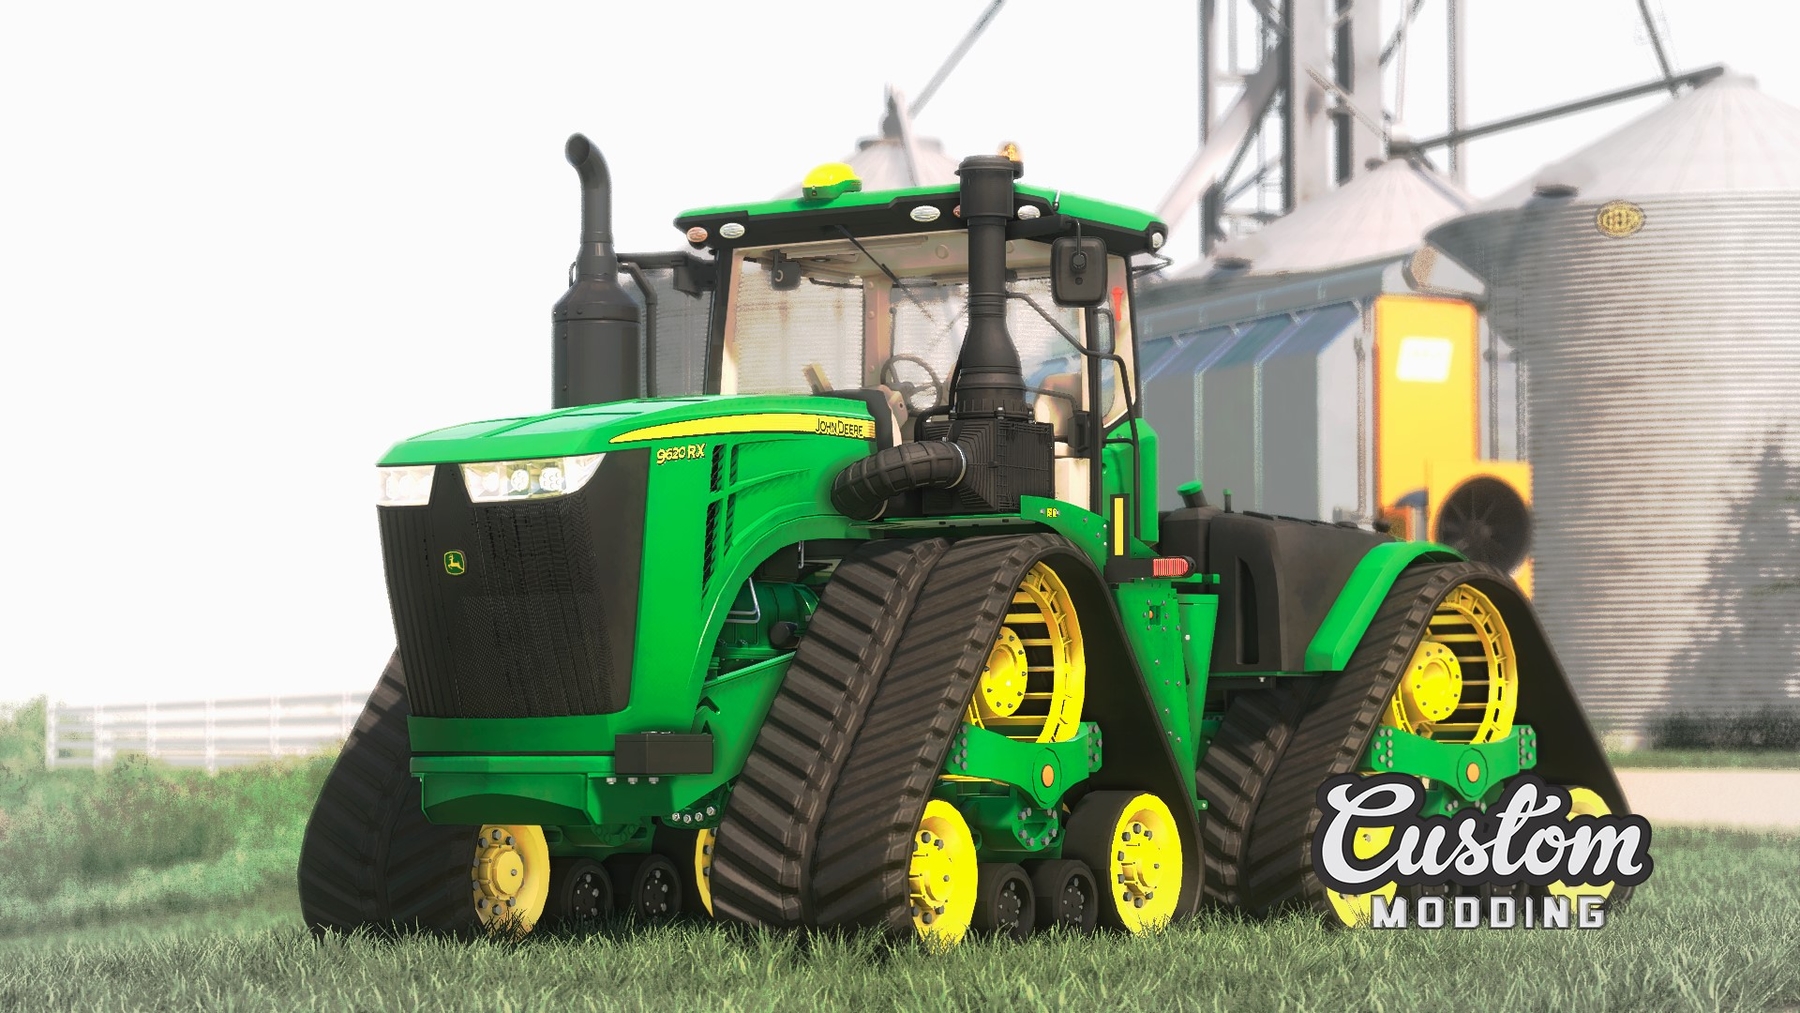 JOHN DEERE 9RX SERIES V1.0.0.0 - FS 19 Tractors - Farming Simulator